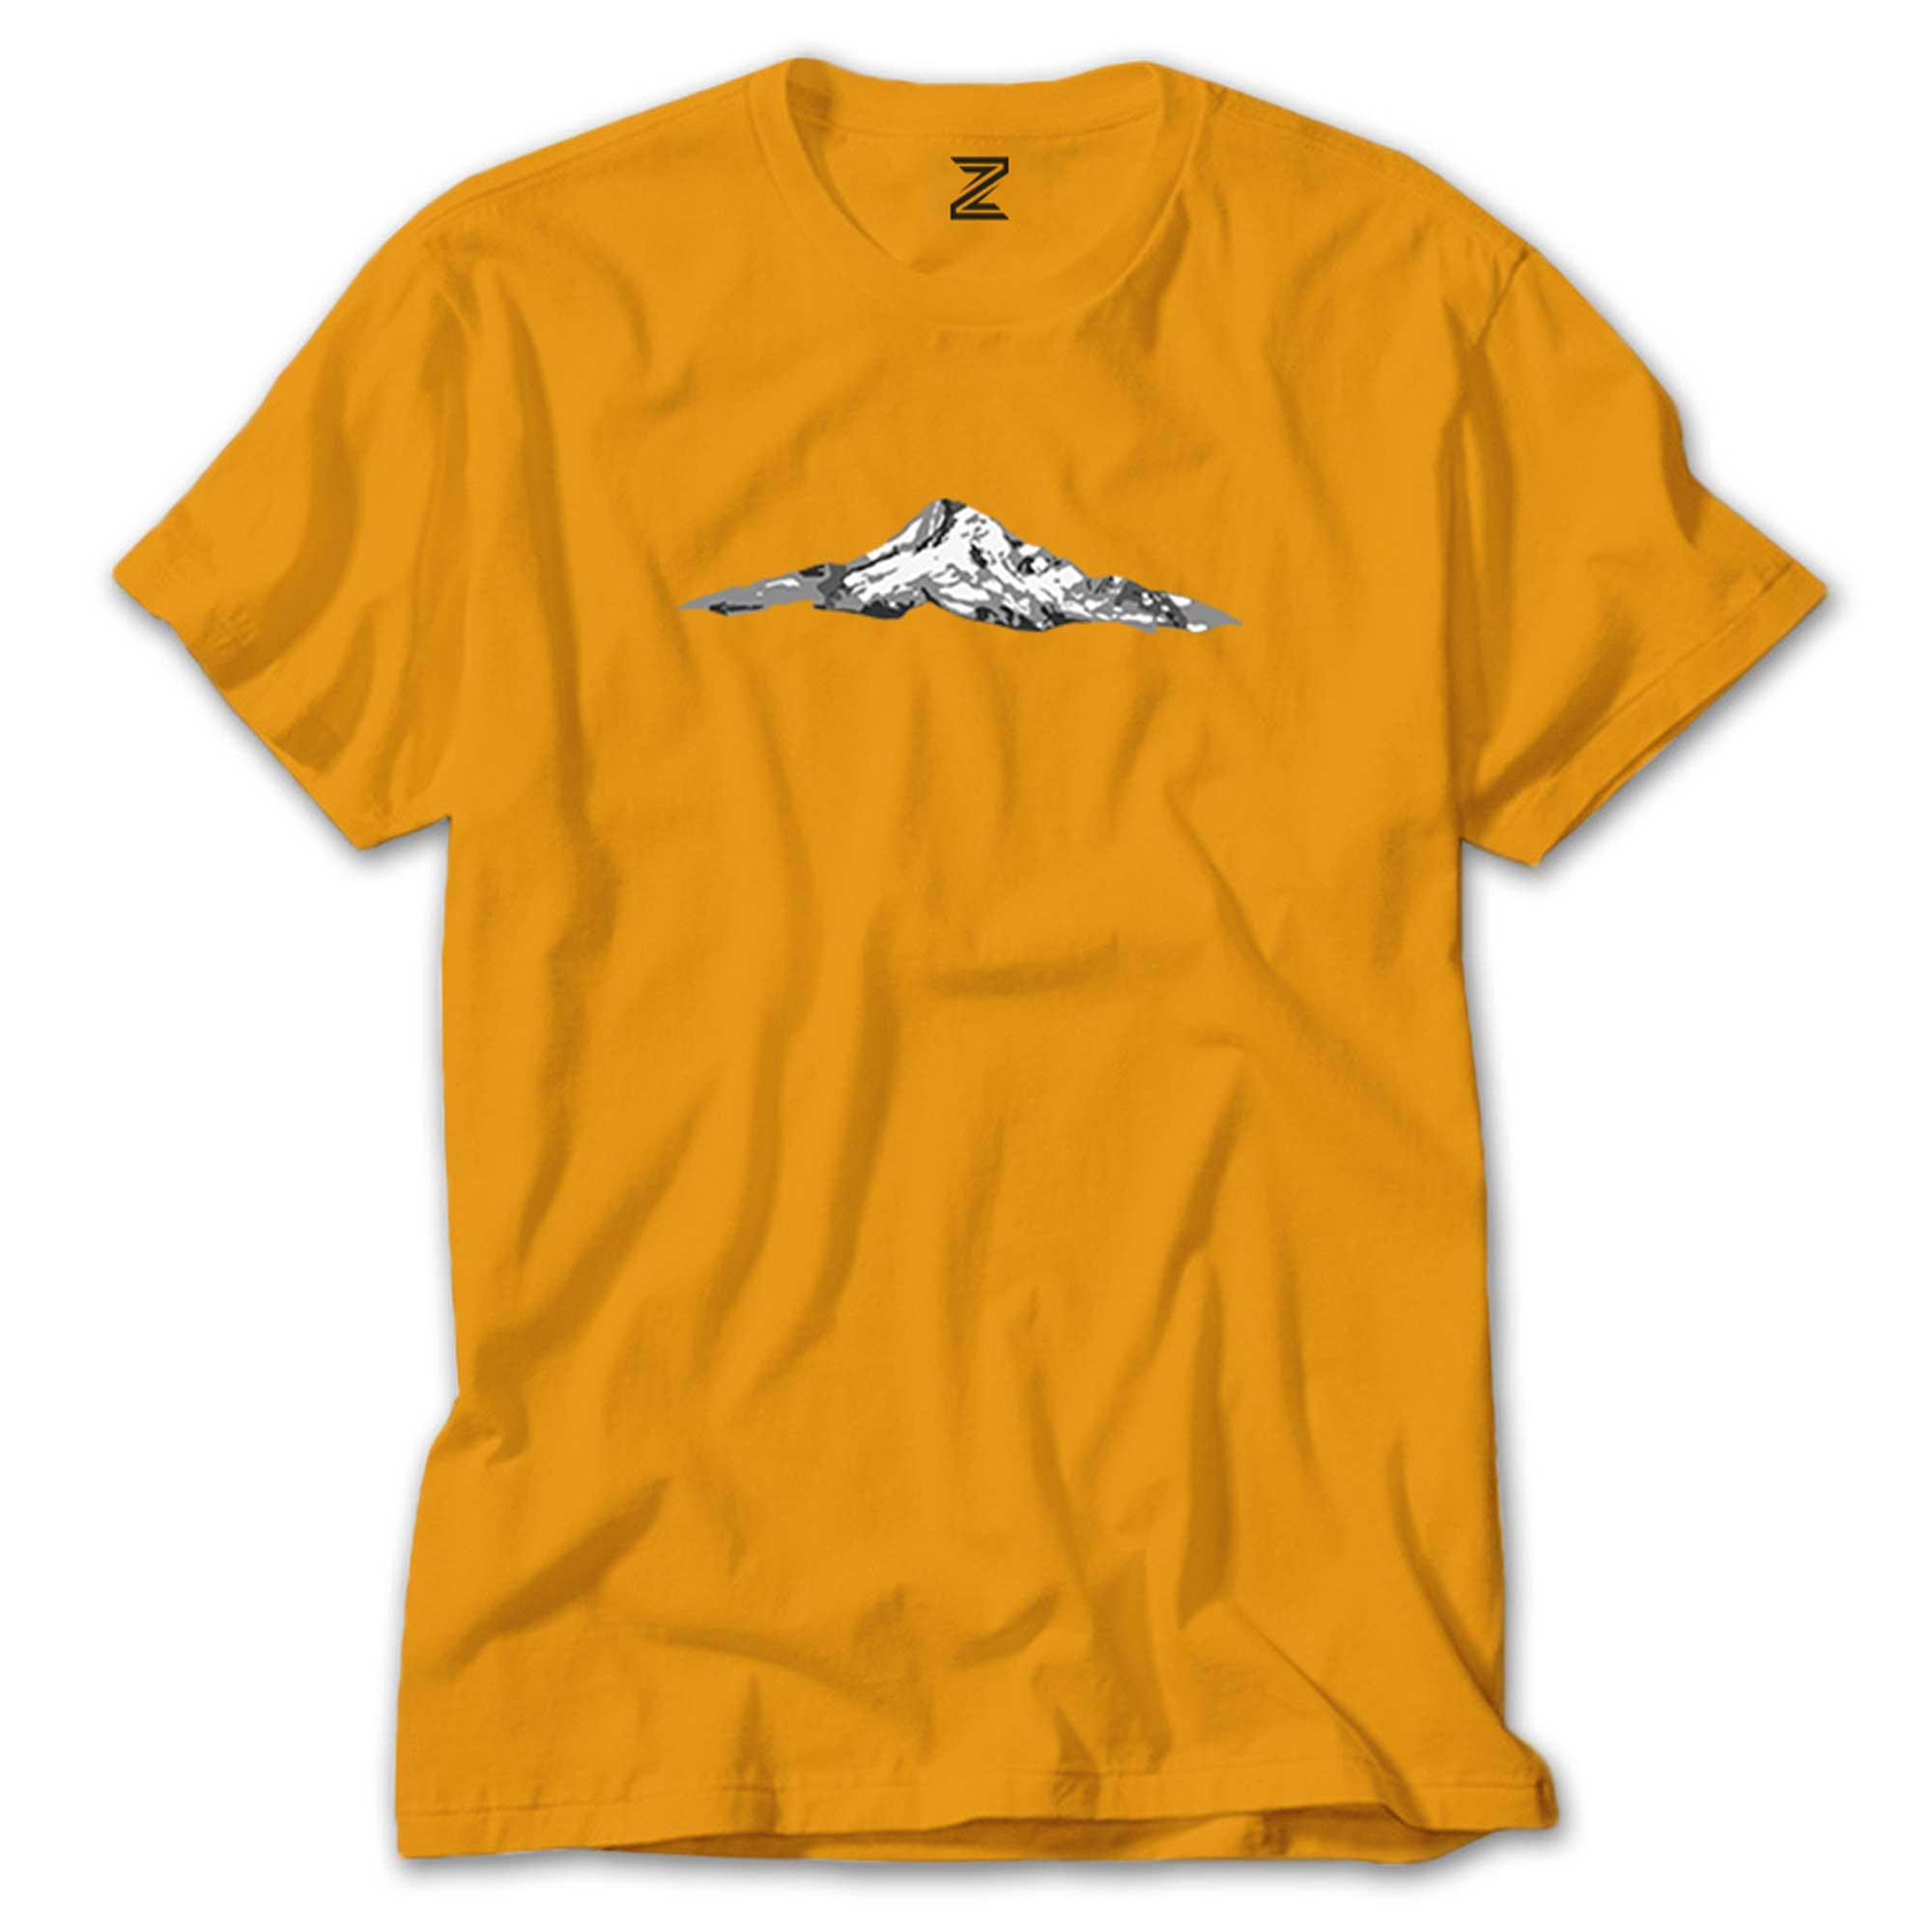 Single Mountain View Renkli Tişört